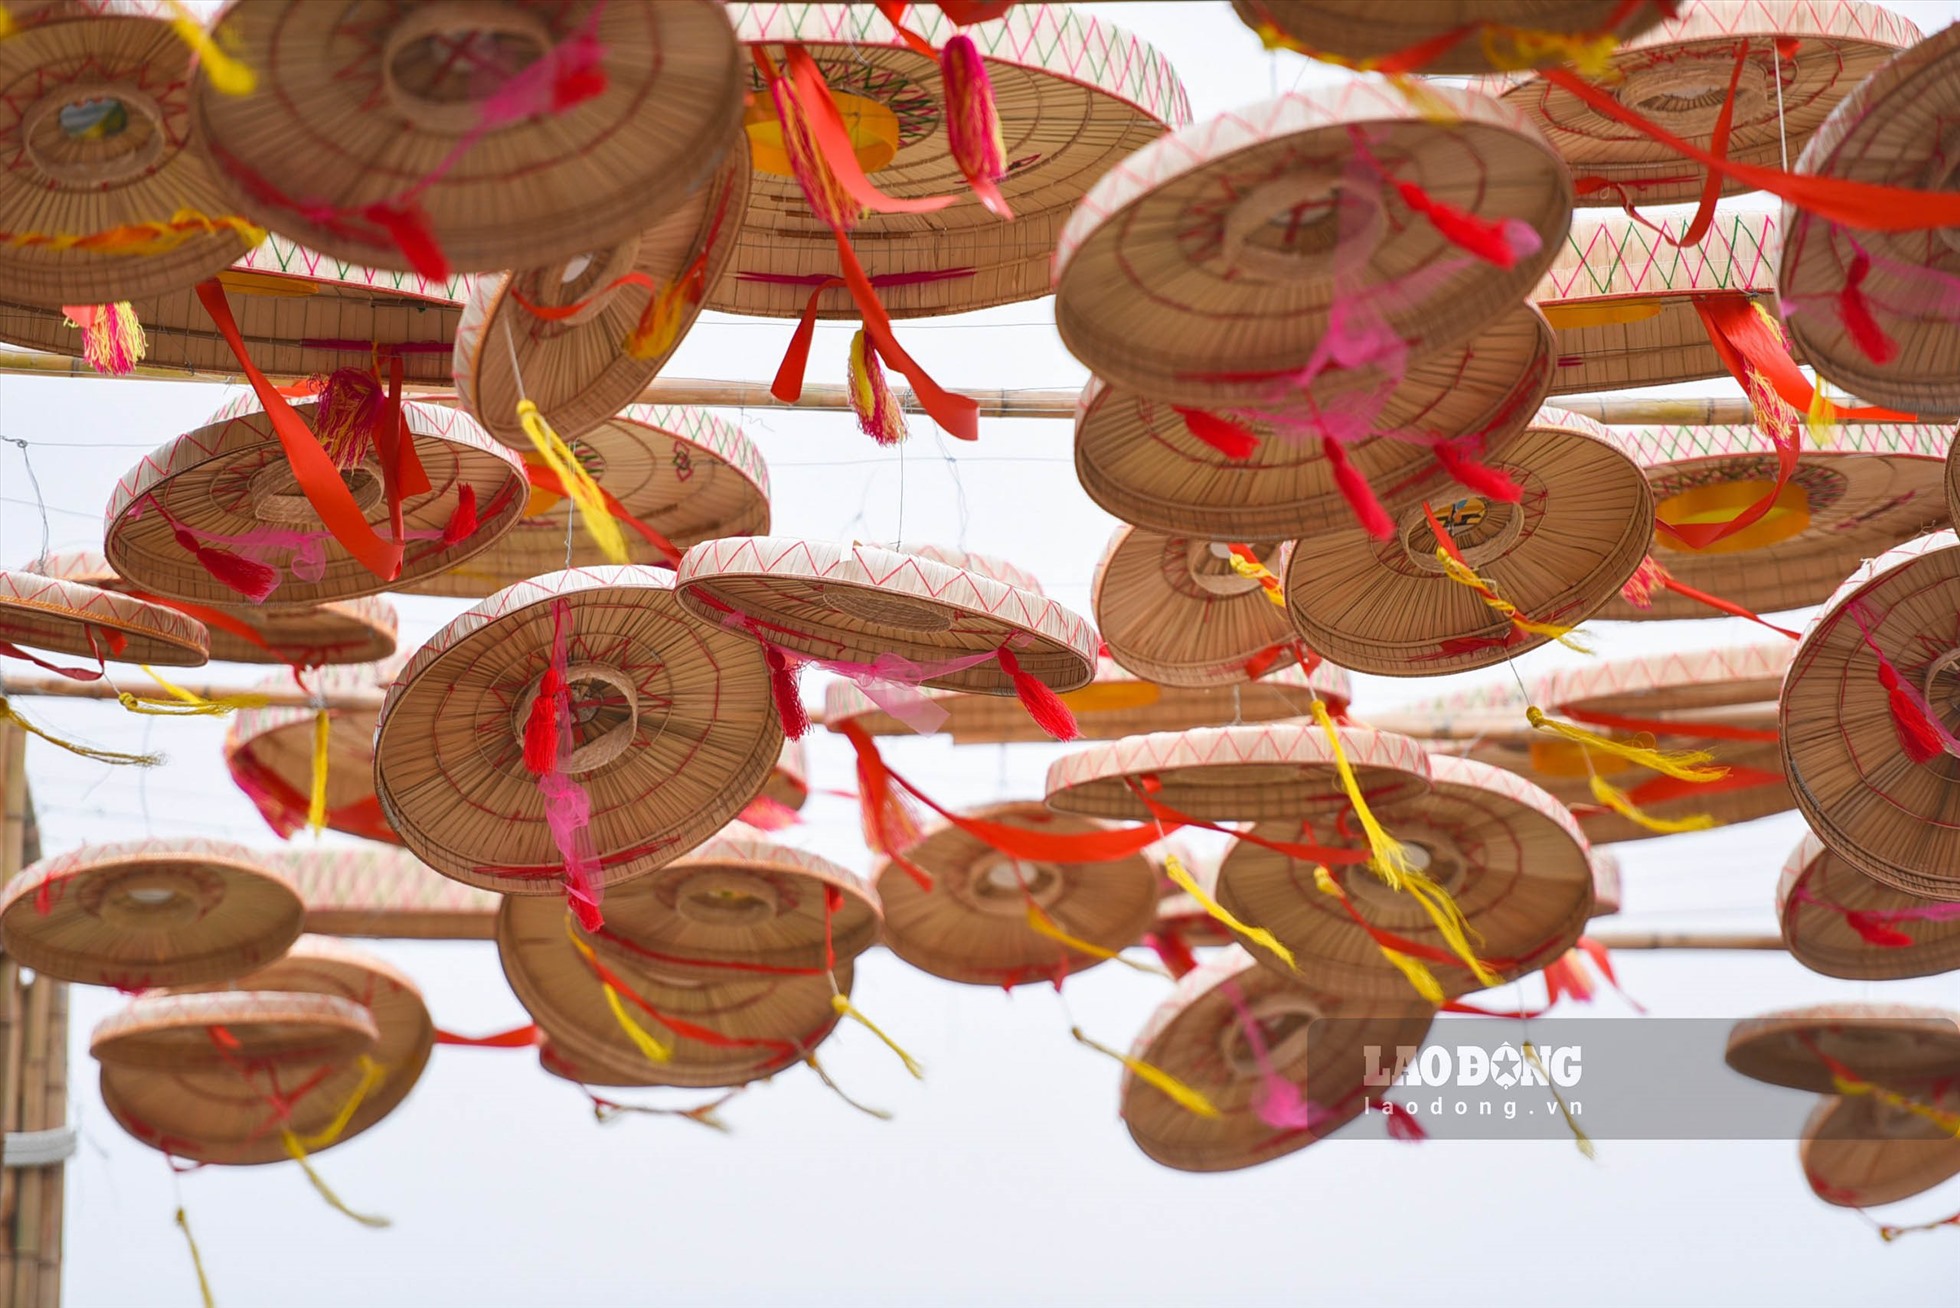 Không gian trang trí đường hoa Lý Thái Tổ đậm chất văn hoá vùng quê quan họ Bắc Ninh với những chiếc nón quai thao bay phấp phới trong gió xuân. Ảnh: Vân Trường.